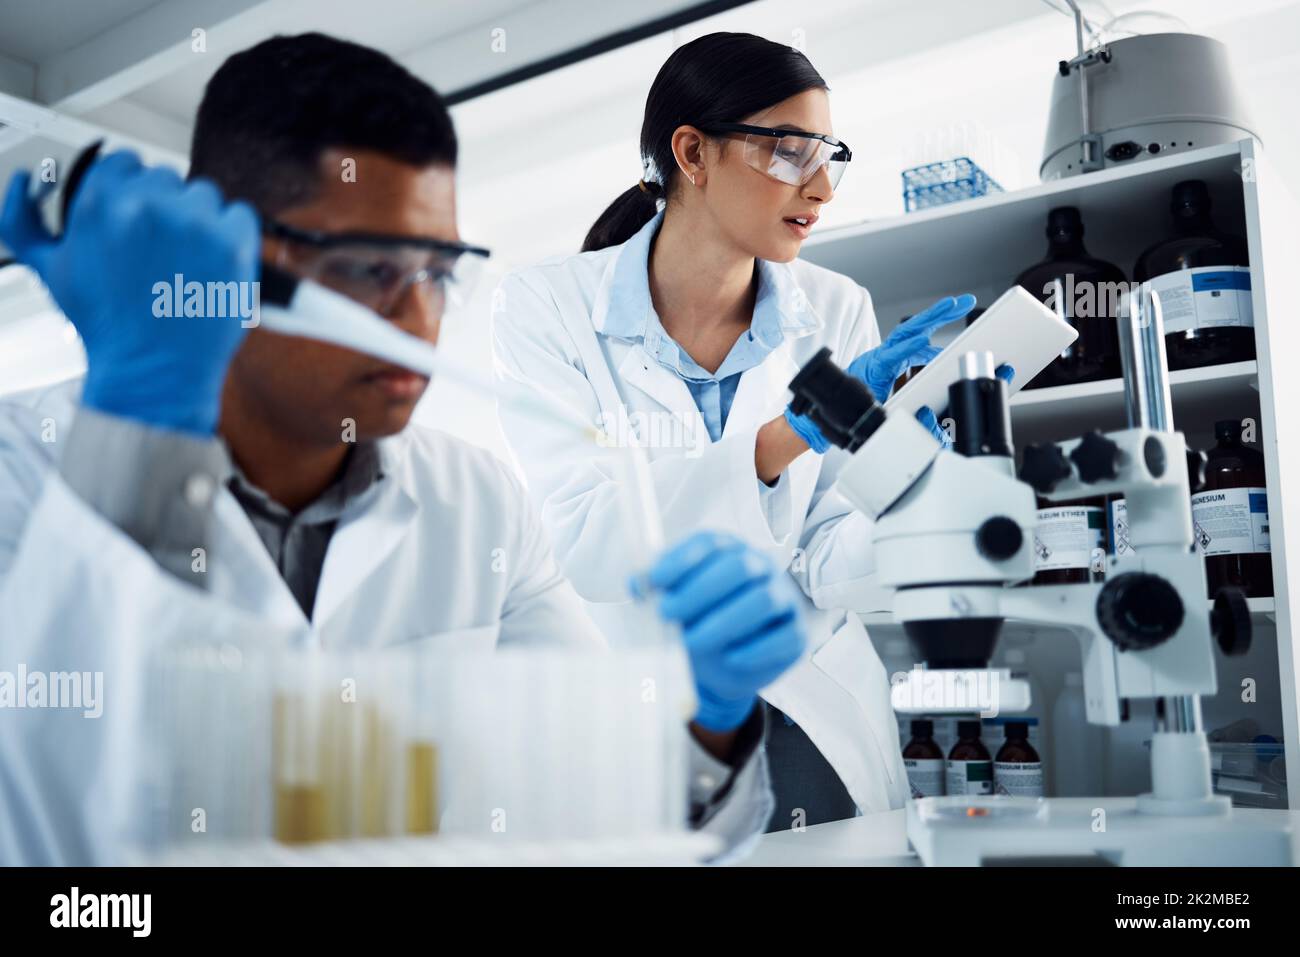 Dur au travail au nom de la santé. Photo de deux jeunes scientifiques utilisant une tablette numérique tout en effectuant des recherches médicales dans un laboratoire. Banque D'Images